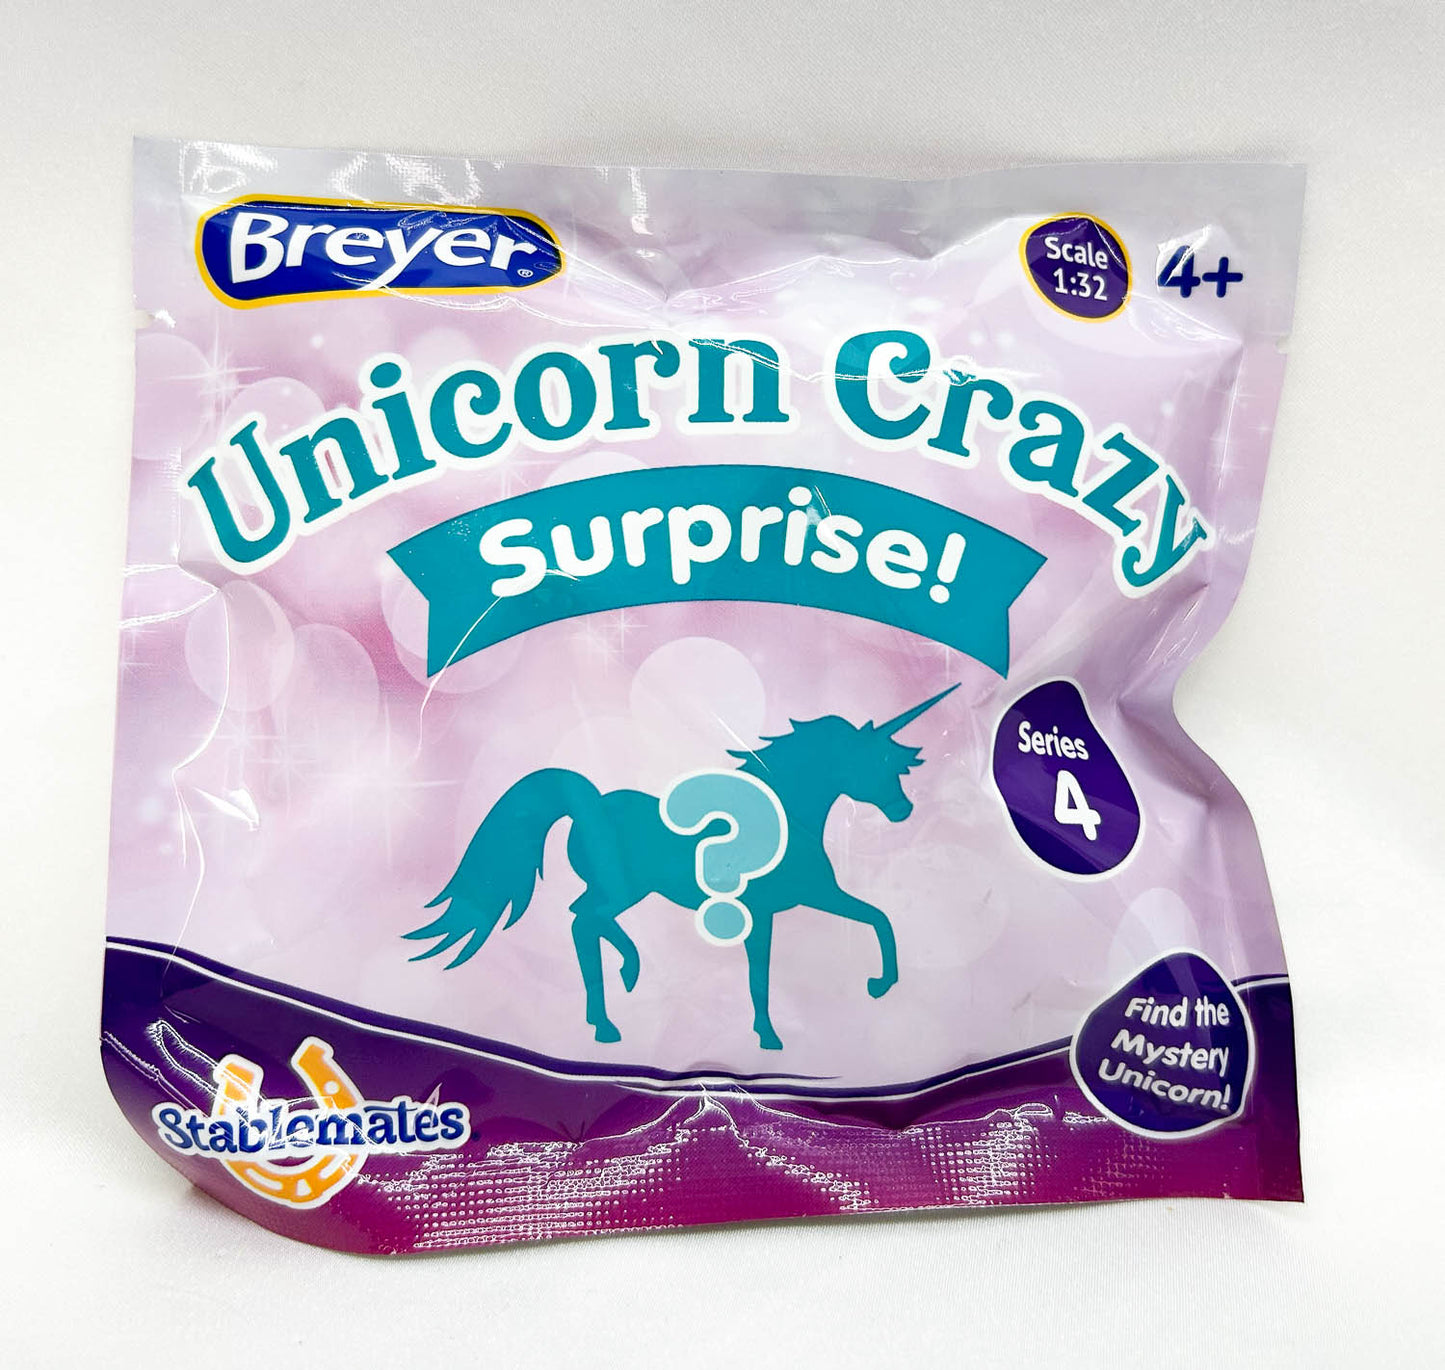 Horse Crazy Surprise, Series 4 - Walmart SR - Unopened Blind Bag